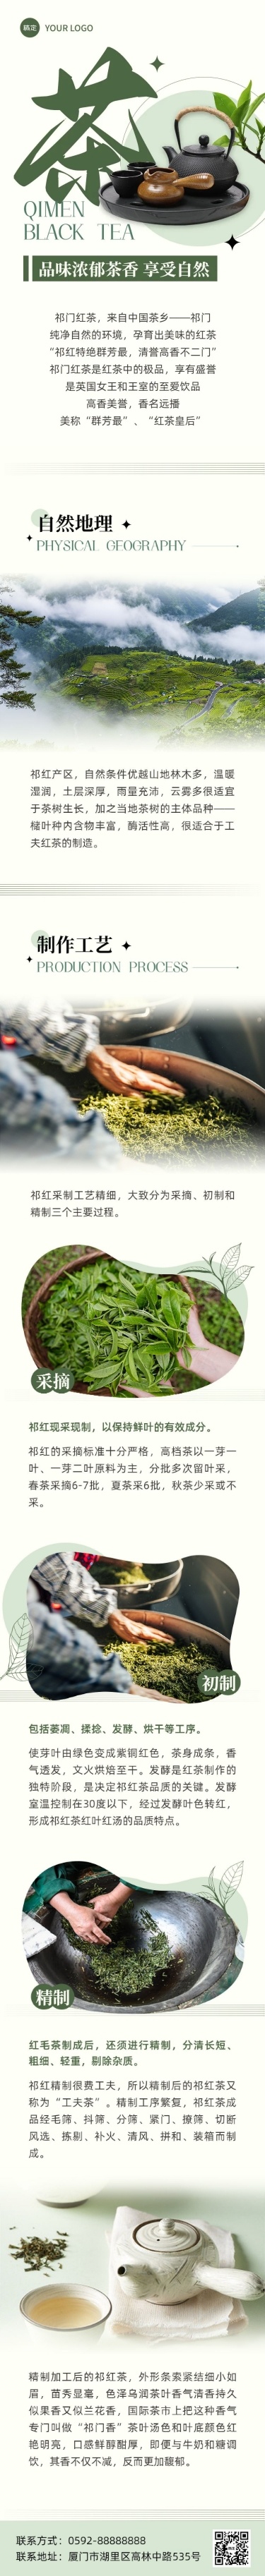 茶叶营销卖货宣传微信公众号长图